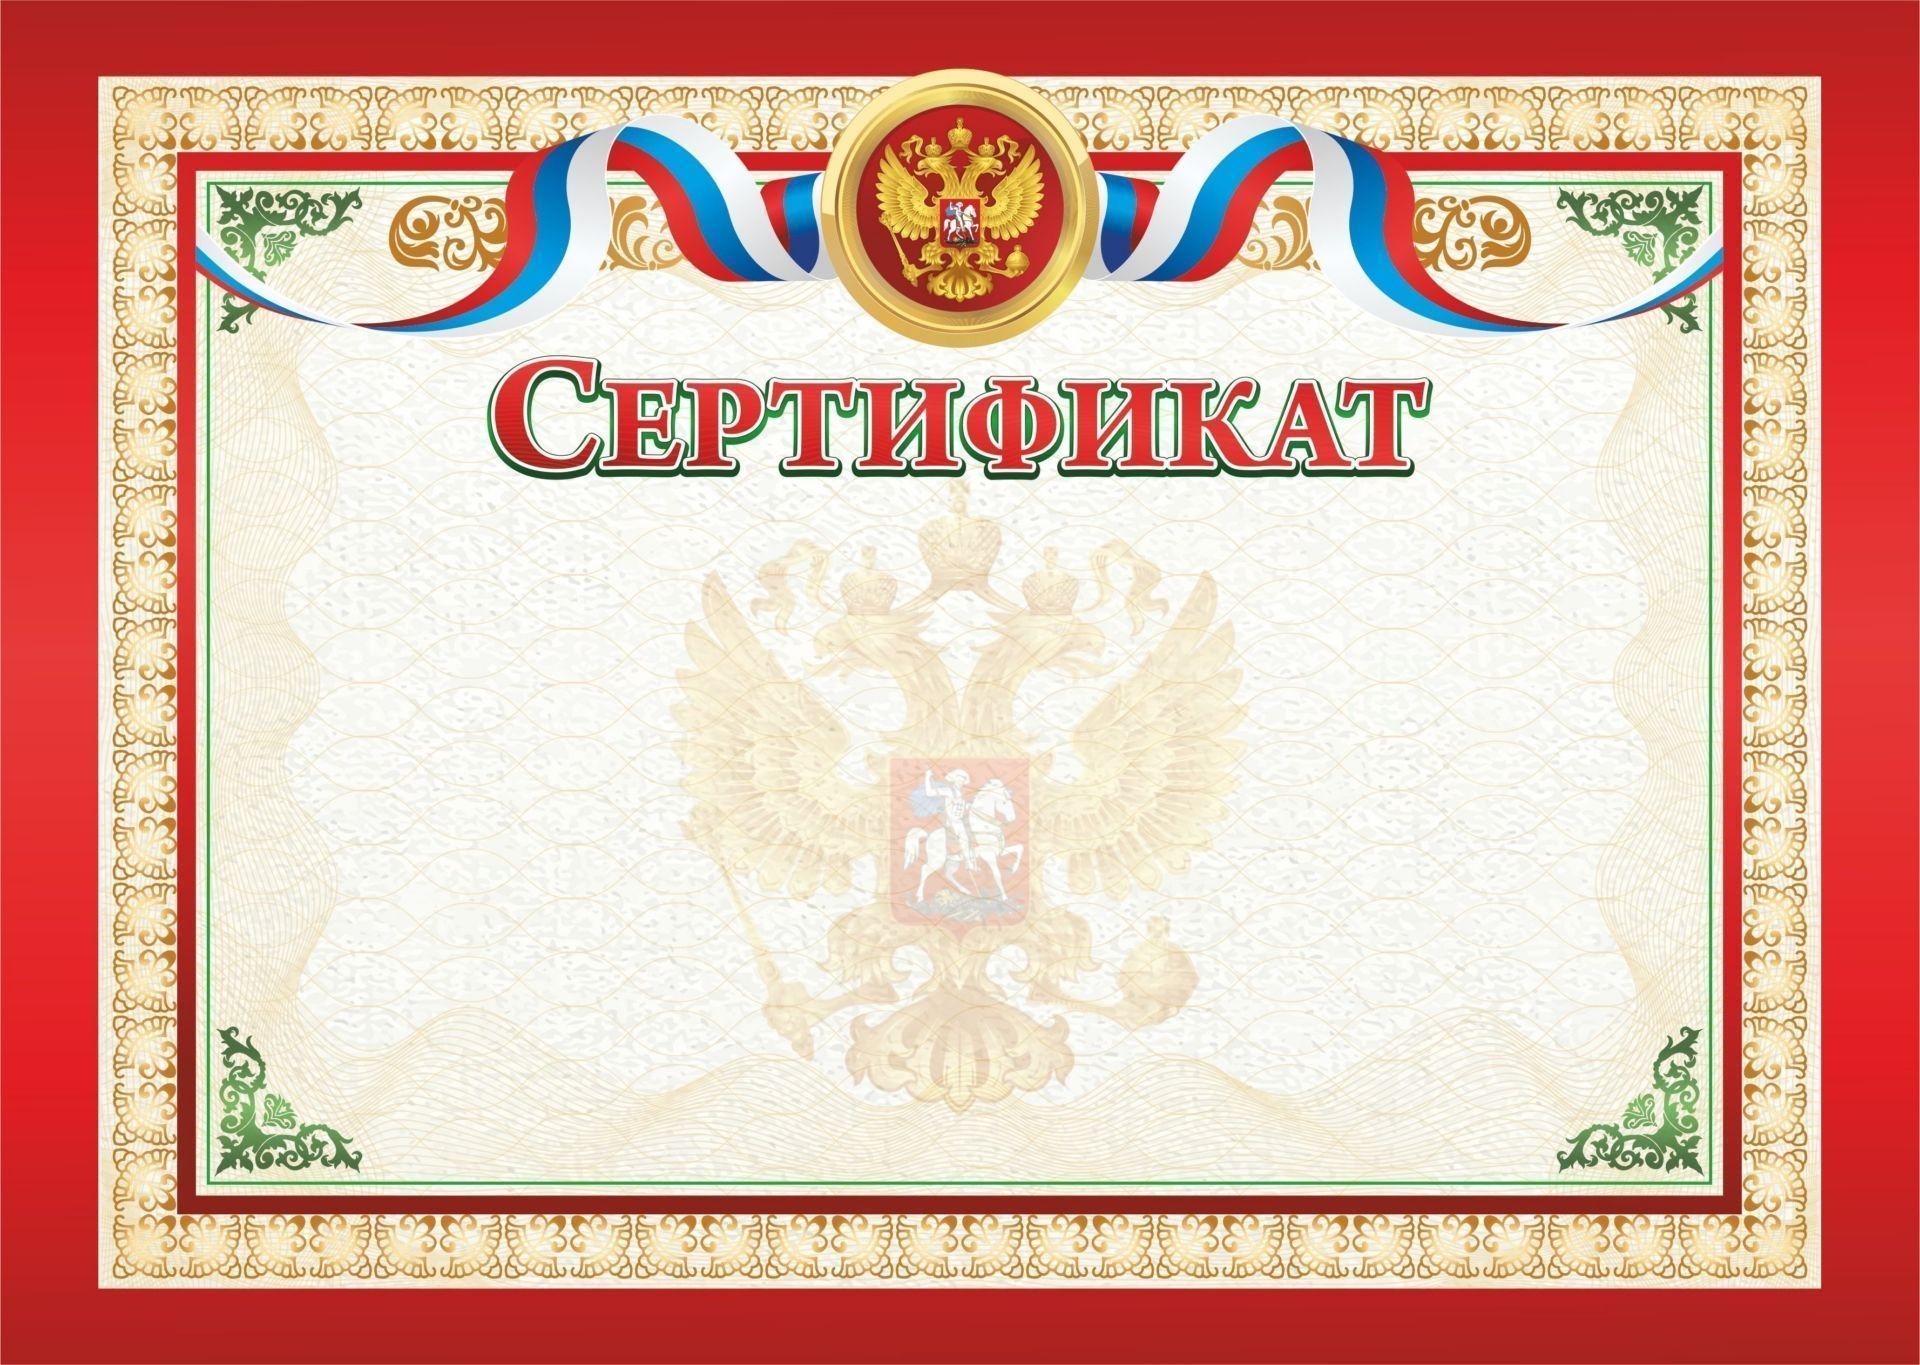 Сертификат (с гербом и флагом)